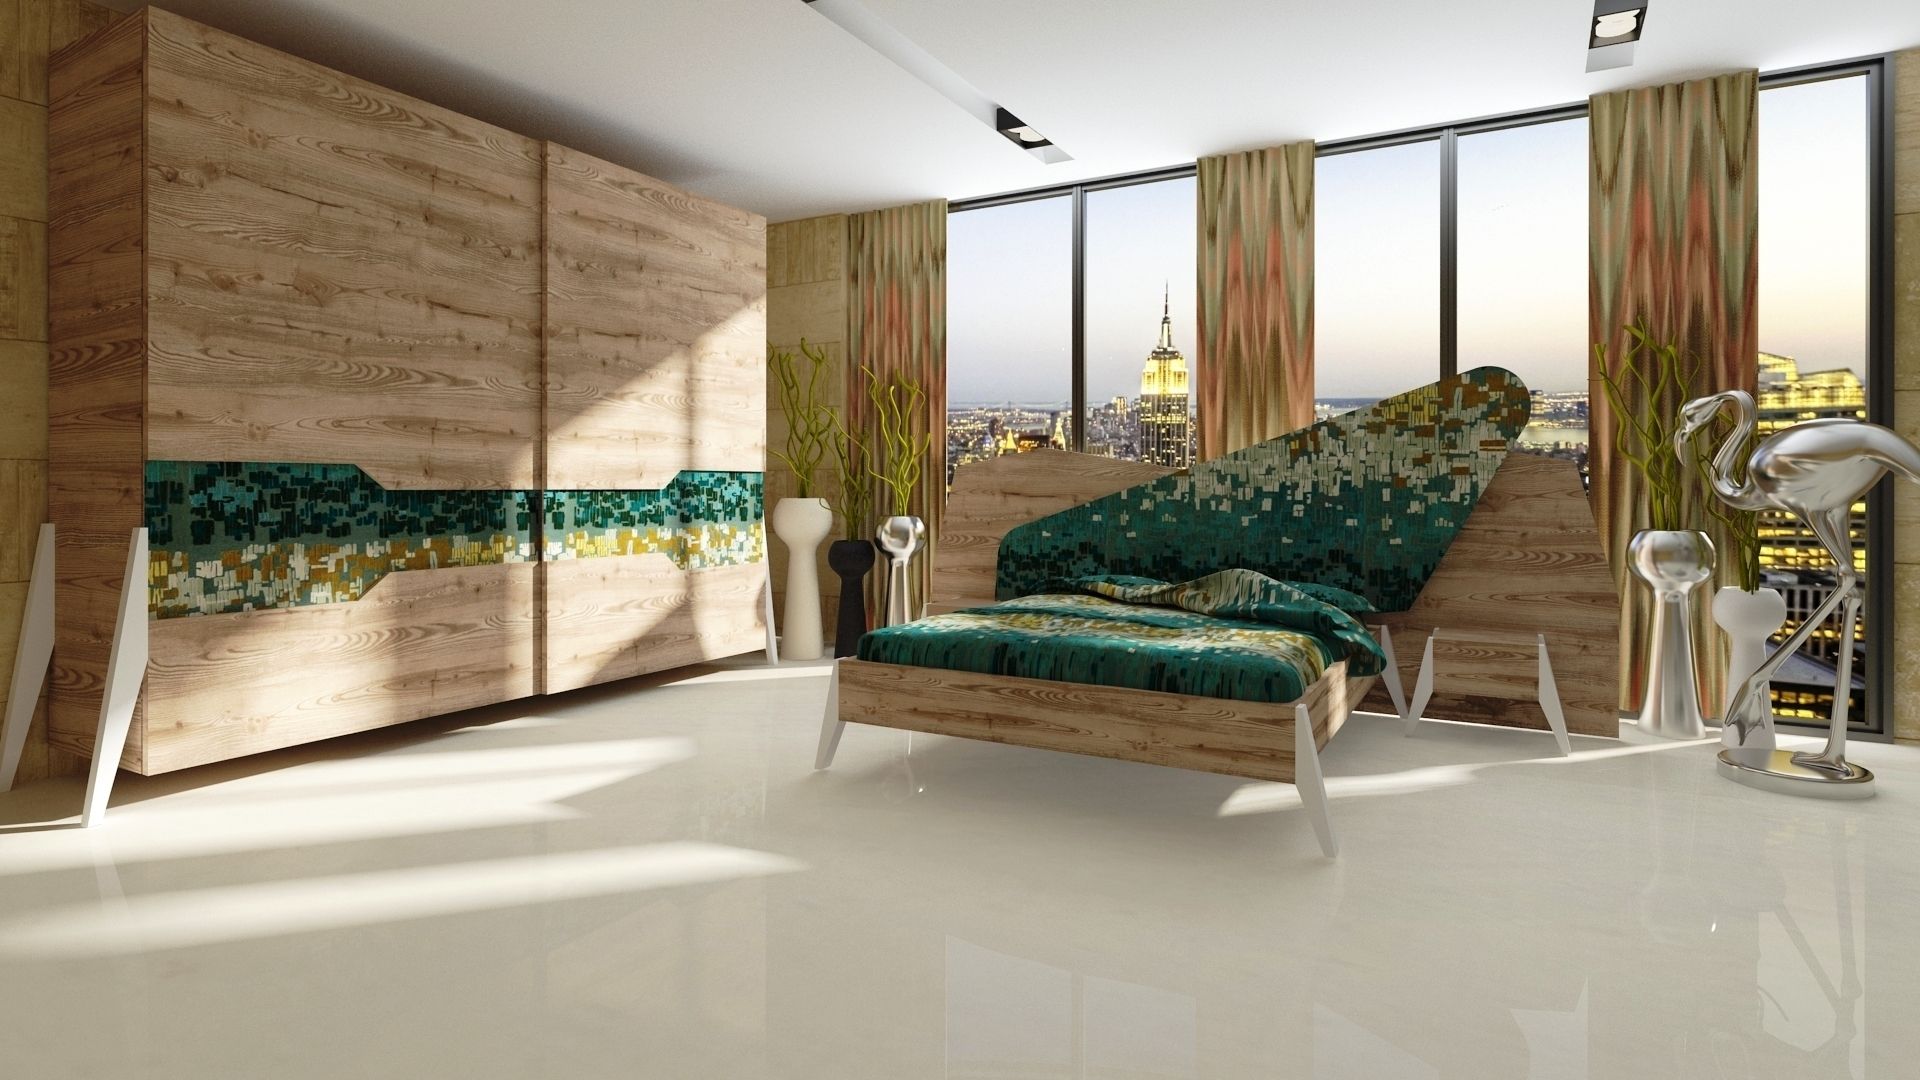 Moroso:The beauty of design bedroom, Inan AYDOGAN /IA Interior Design Office Inan AYDOGAN /IA Interior Design Office Dormitorios rústicos Placares y cómodas